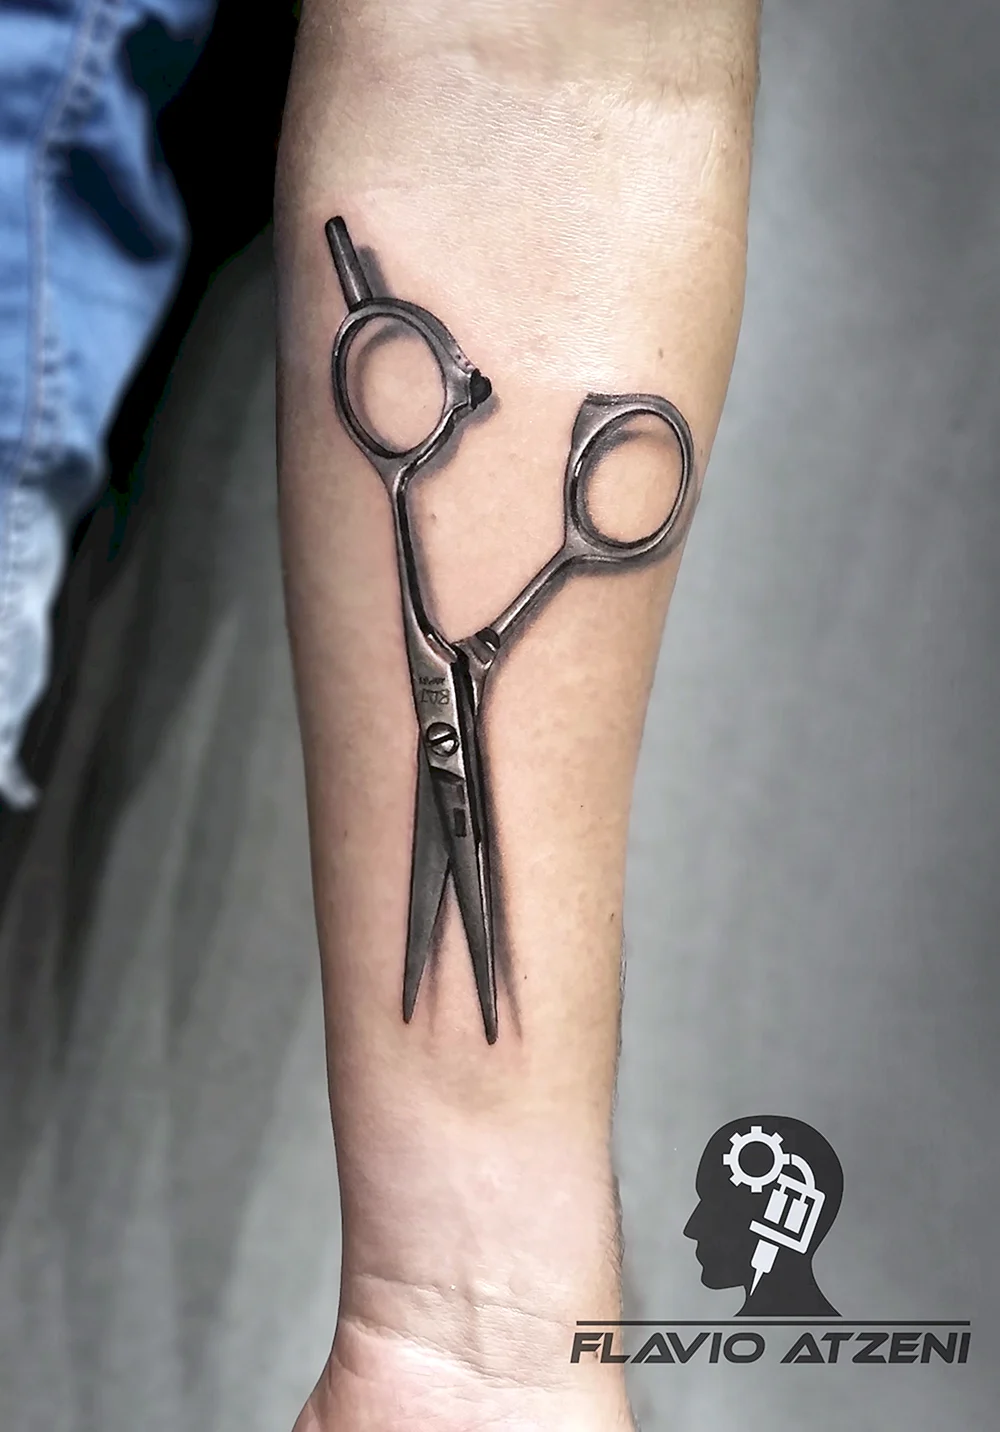 Hair Scissors Tattoo